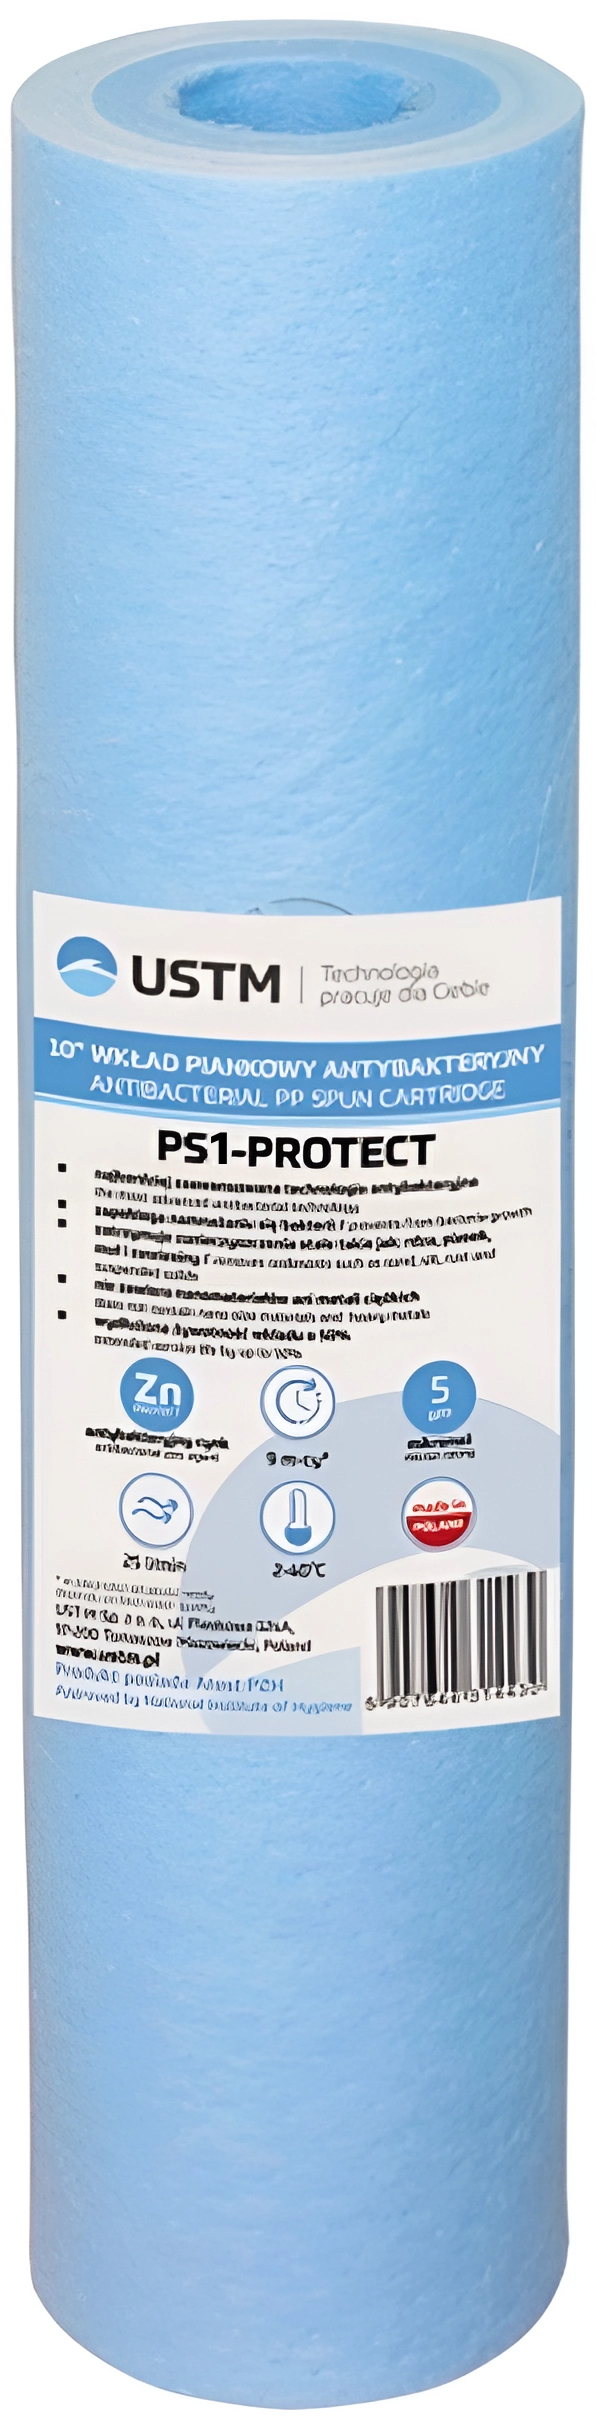 Купить картридж для фильтра USTM PS-1-Protect 10" в Киеве